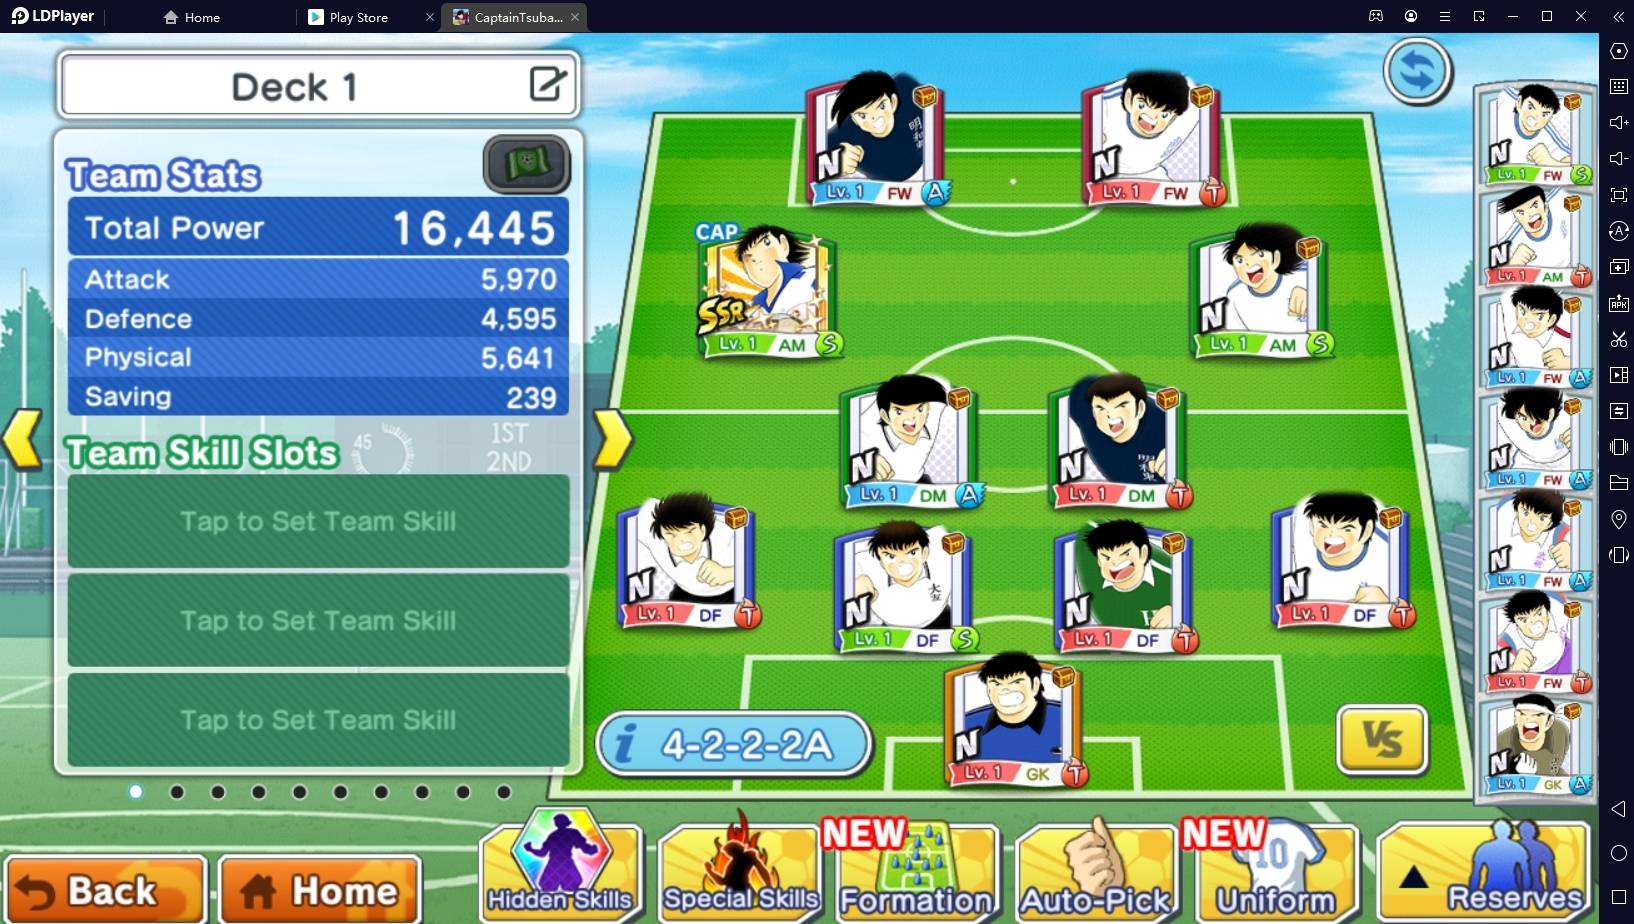 download main captain tsubasa dream team di pc emulator ldplayer